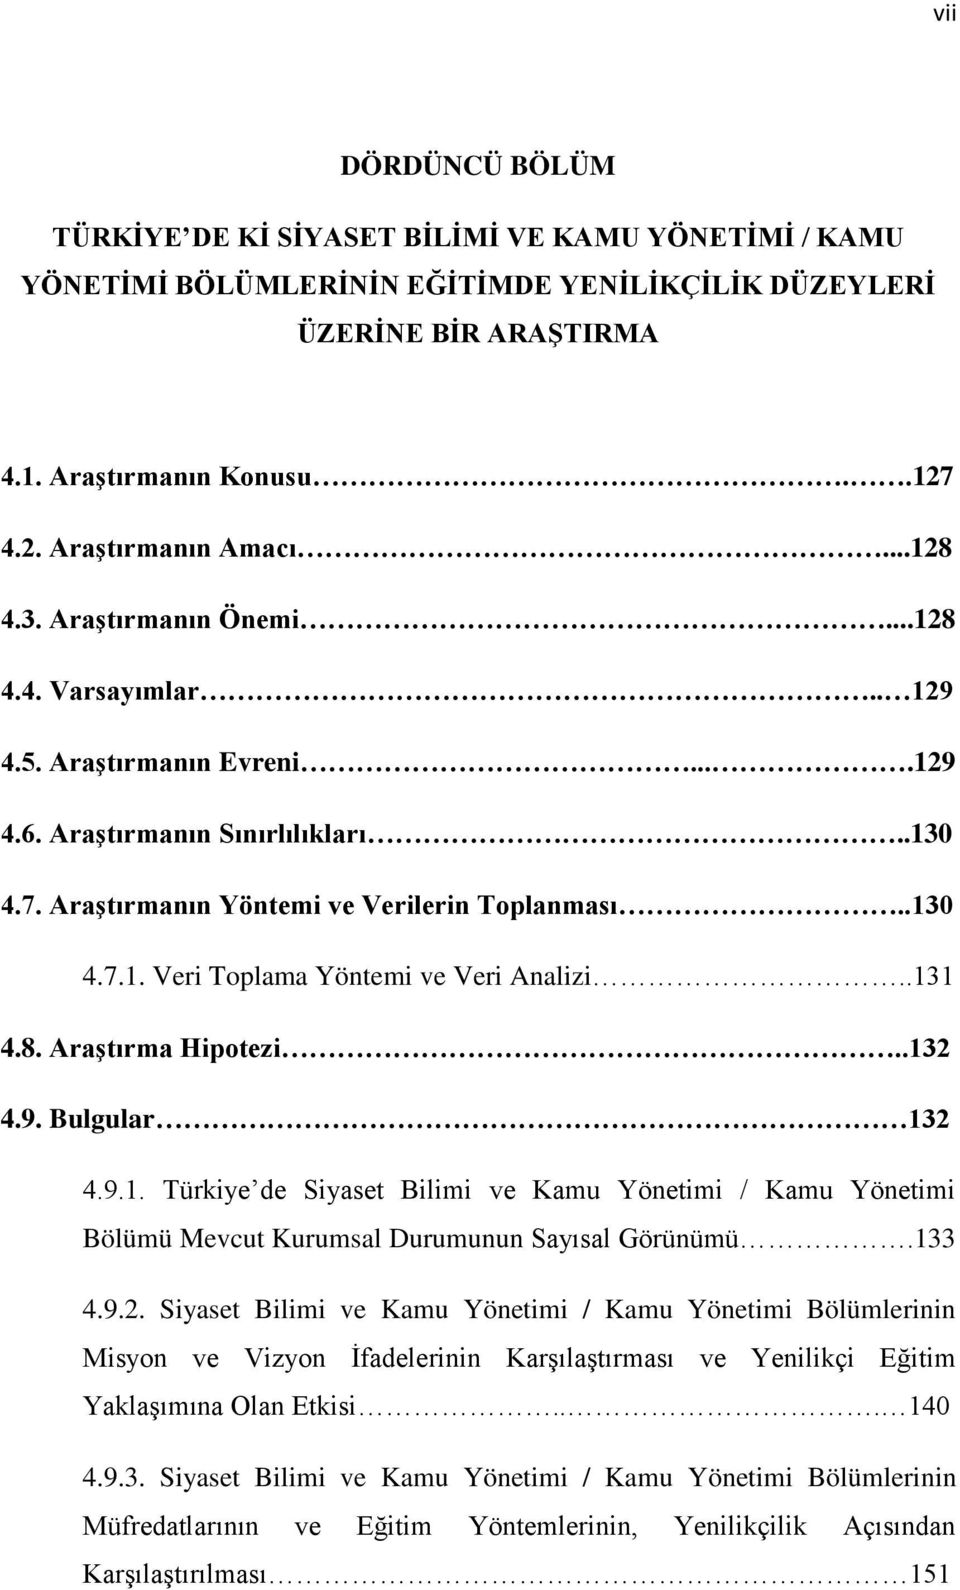 .131 4.8. Araştırma Hipotezi..132 4.9. Bulgular 132 4.9.1. Türkiye de Siyaset Bilimi ve Kamu Yönetimi / Kamu Yönetimi Bölümü Mevcut Kurumsal Durumunun Sayısal Görünümü.133 4.9.2. Siyaset Bilimi ve Kamu Yönetimi / Kamu Yönetimi Bölümlerinin Misyon ve Vizyon İfadelerinin Karşılaştırması ve Yenilikçi Eğitim Yaklaşımına Olan Etkisi.